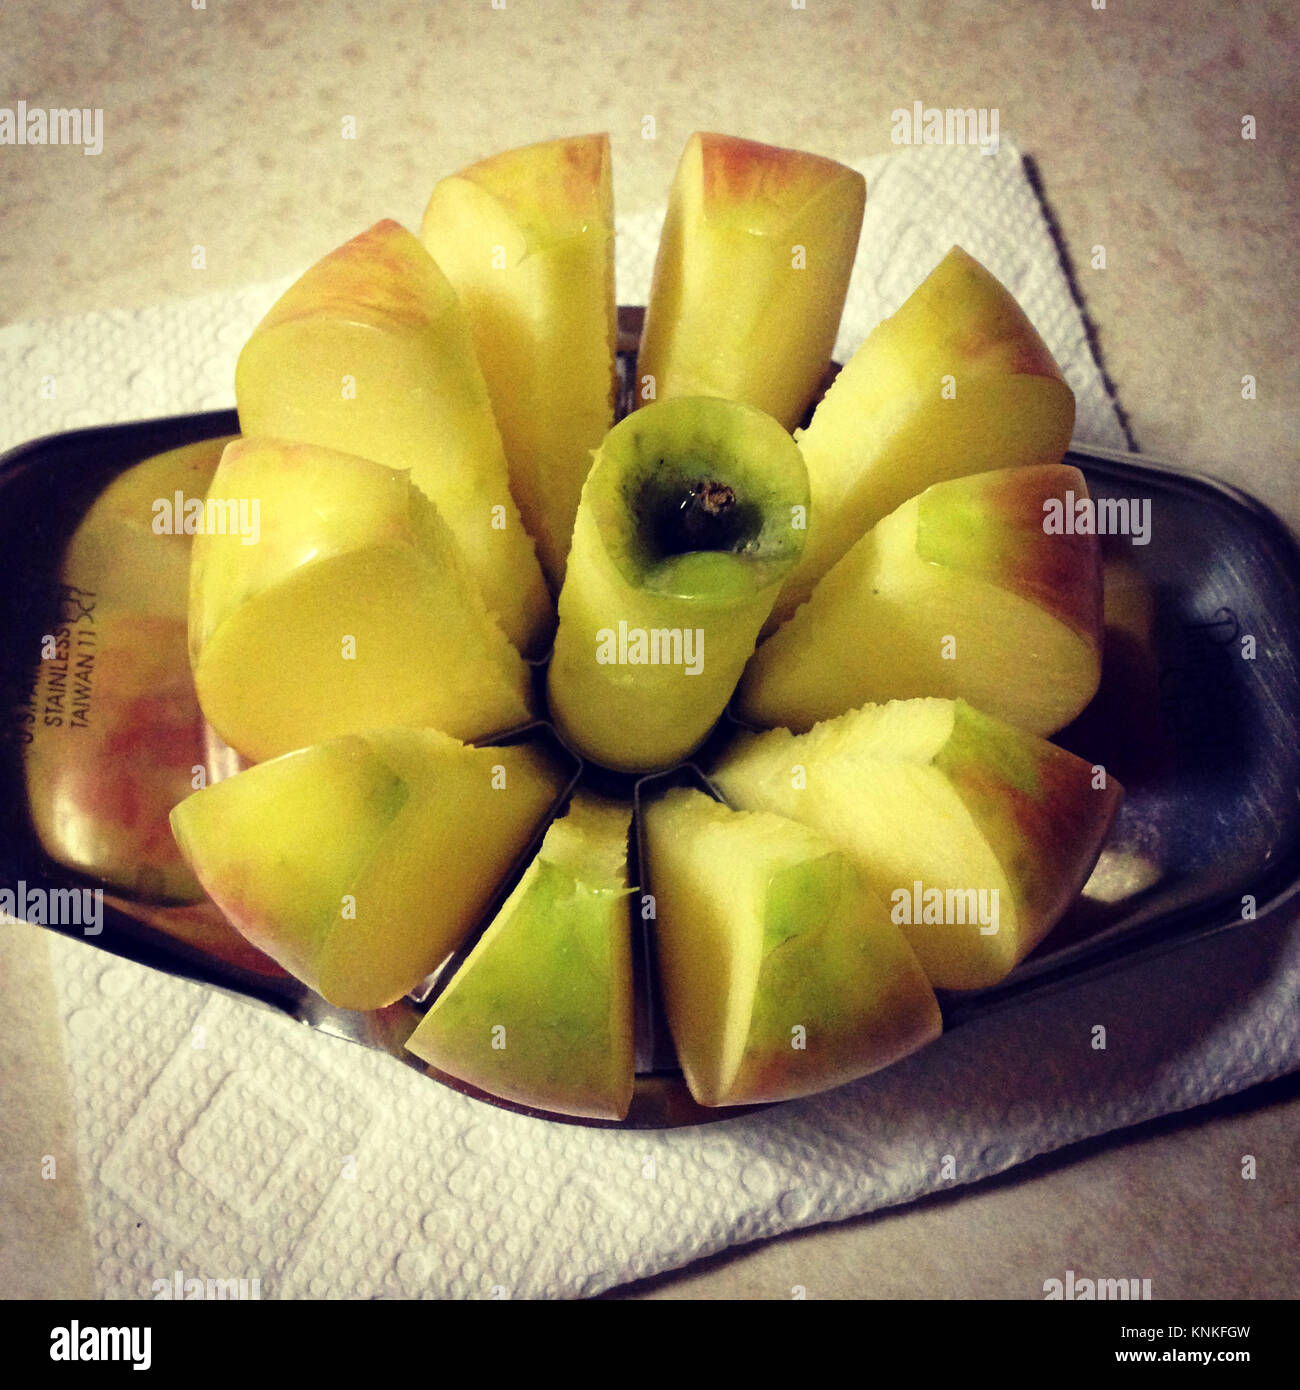 https://c8.alamy.com/comp/KNKFGW/apple-being-cut-with-an-apple-cutter-KNKFGW.jpg